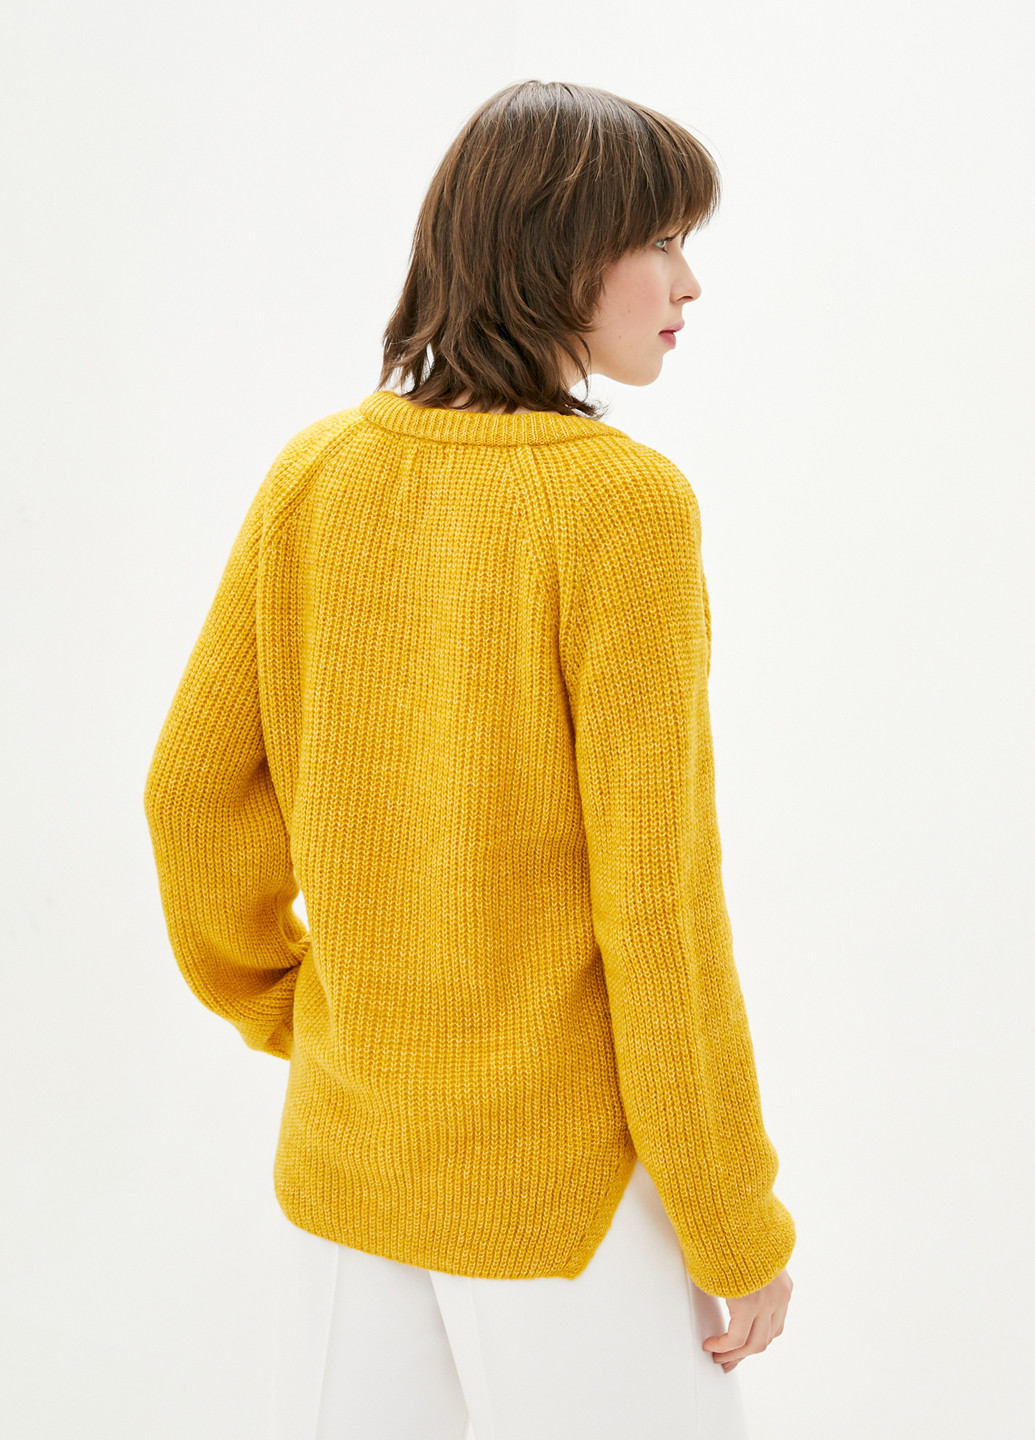 Горчичный демисезонный пуловер пуловер Sewel